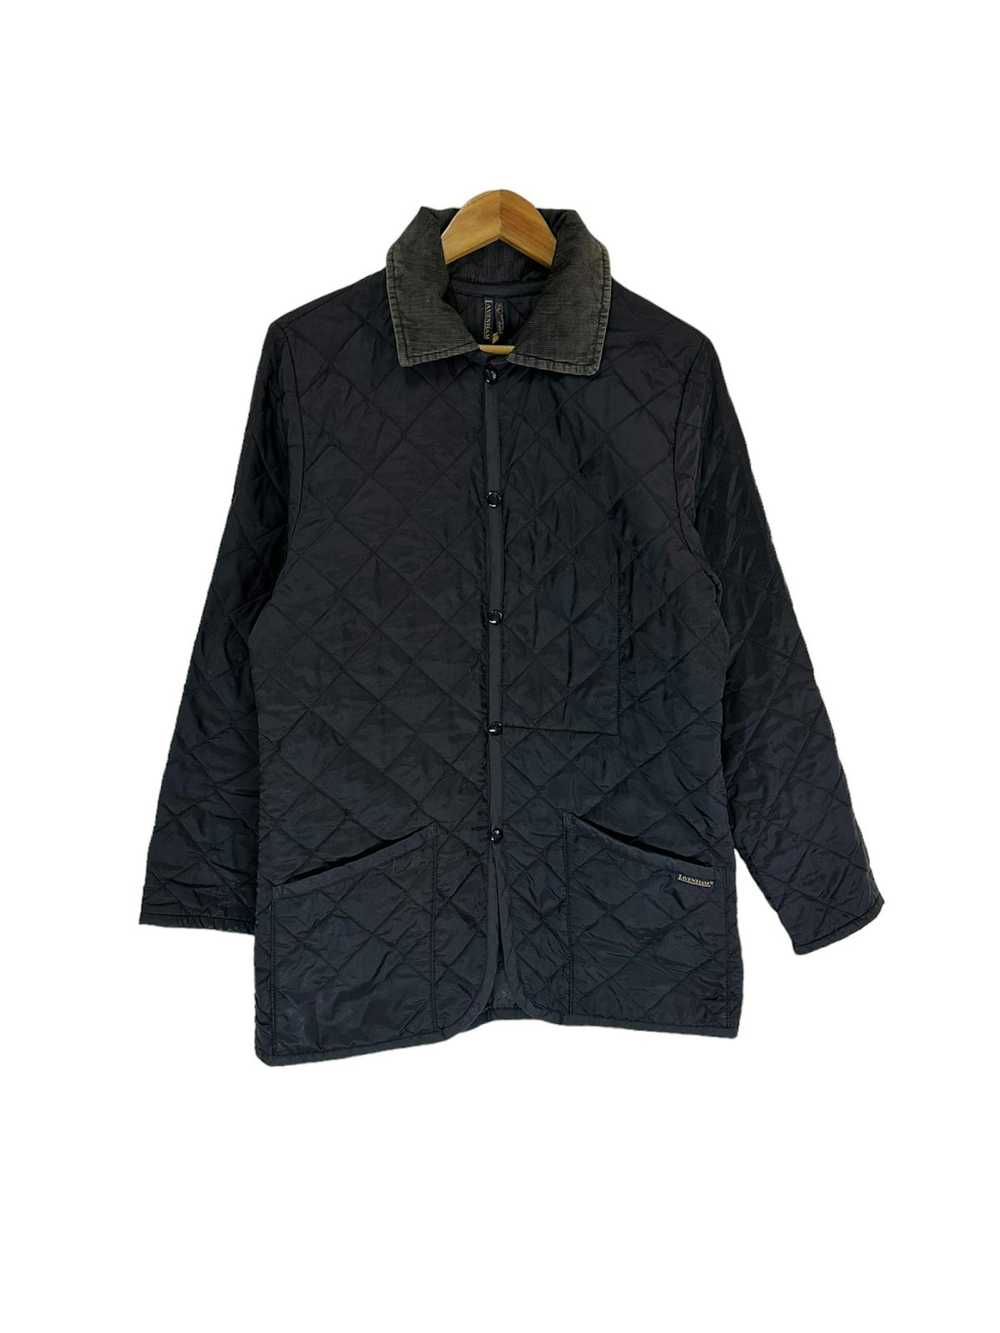 Lavenham Lavenham quilted jacket - image 1